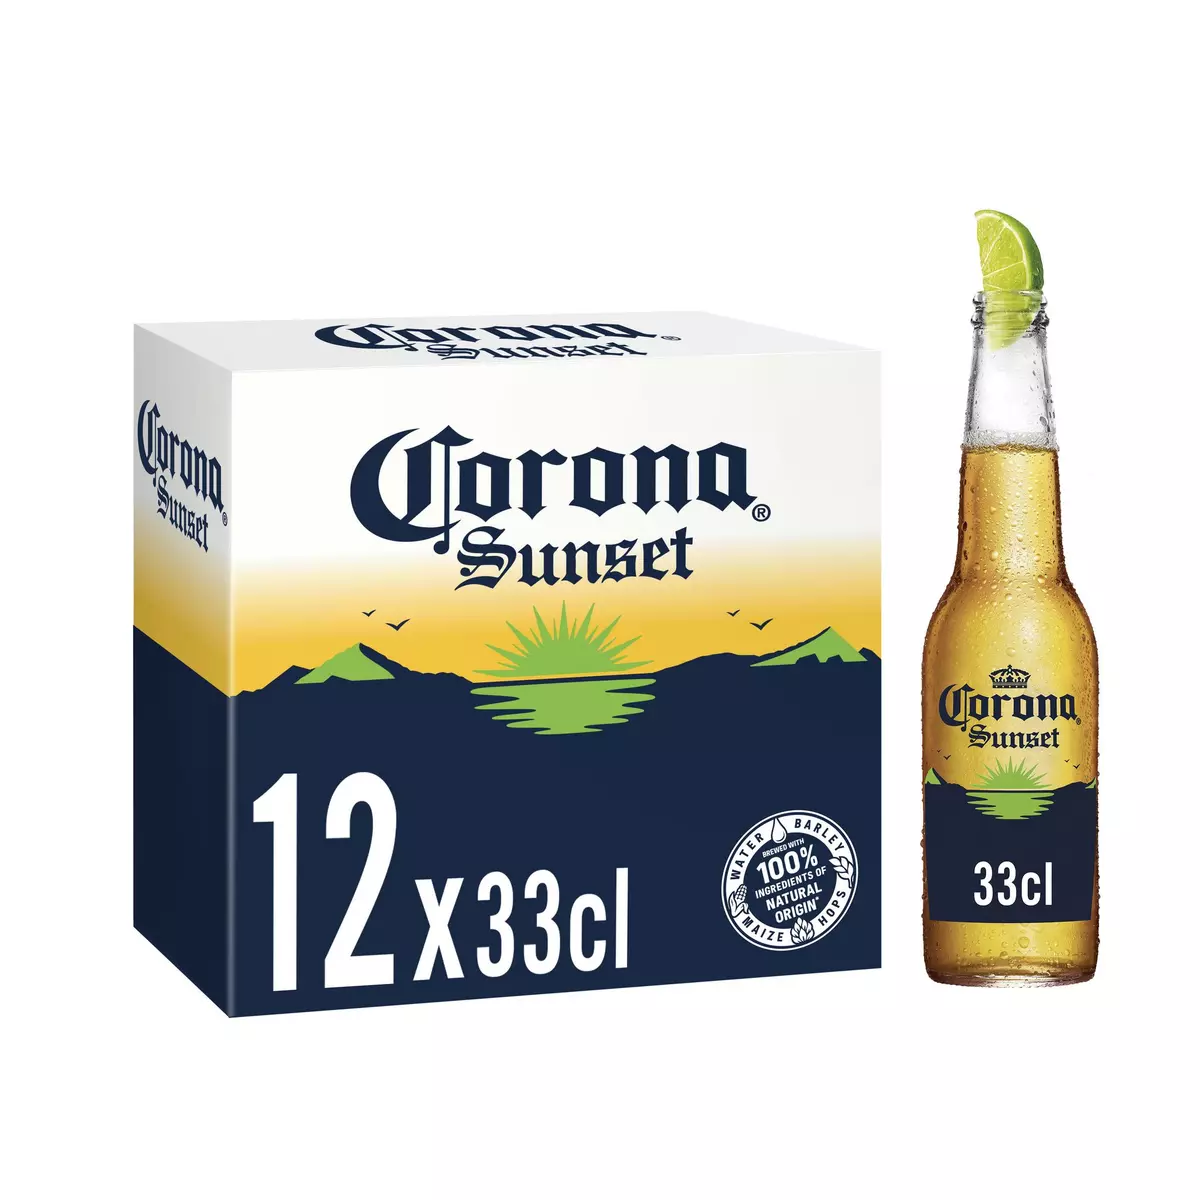 CORONA SUNSET Bière au spiritueux mexicain et vrai jus de fruits 5.9% 12x33cl